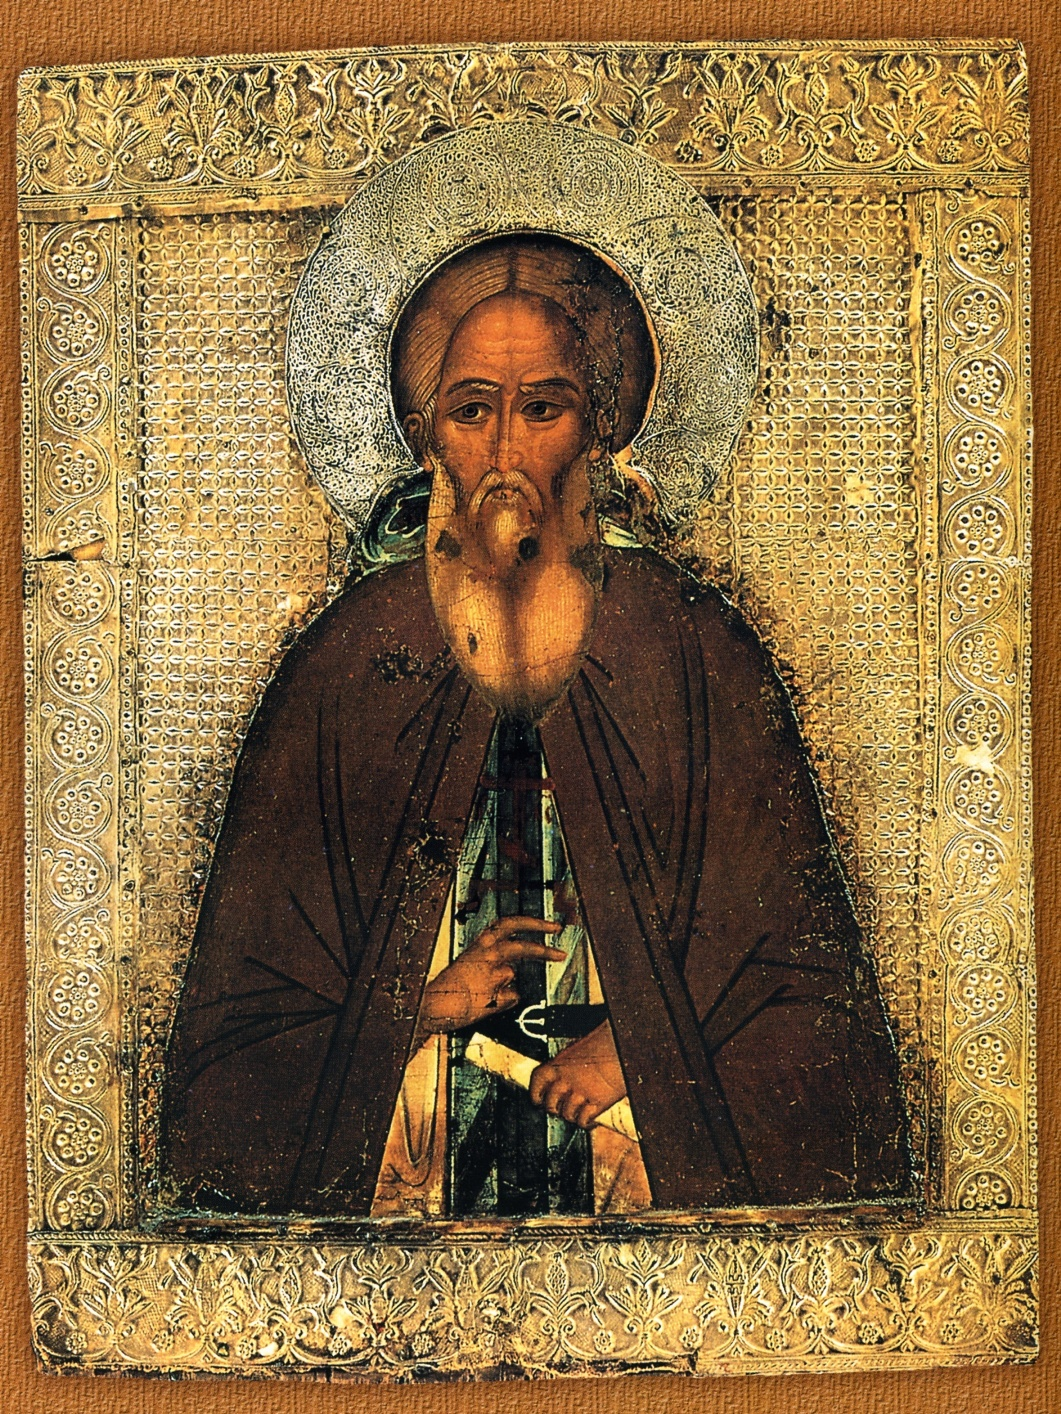 Преподобный Сергий Радонежский – основатель Свято-Троицкой лавры и других монастырей